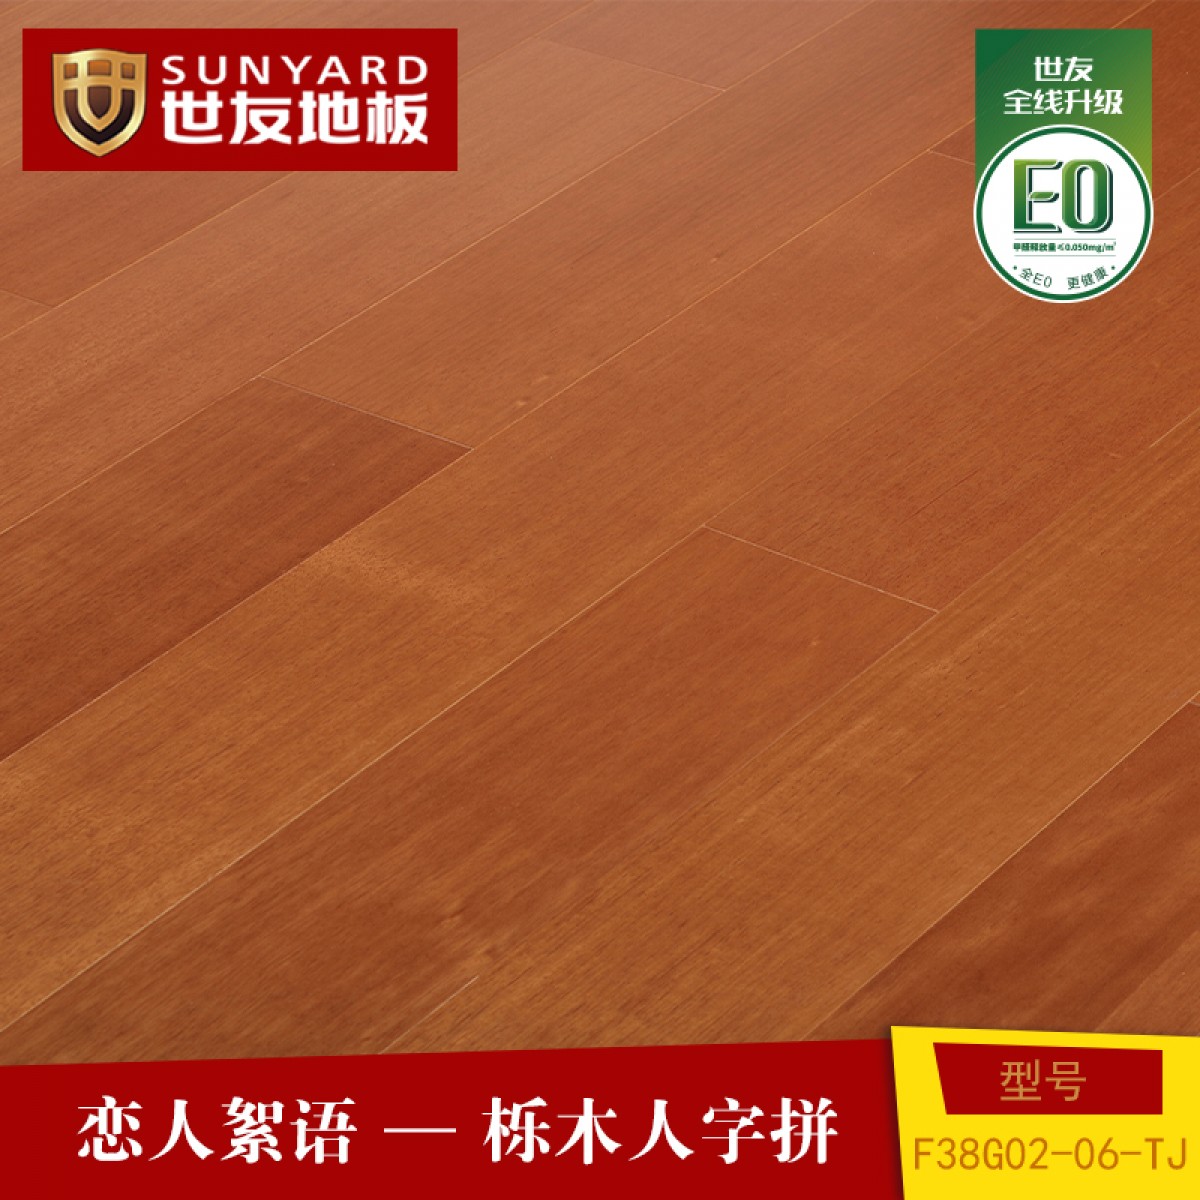 世友地板  实木复合地板  E0级环保  更抗刮  更耐磨 更耐用